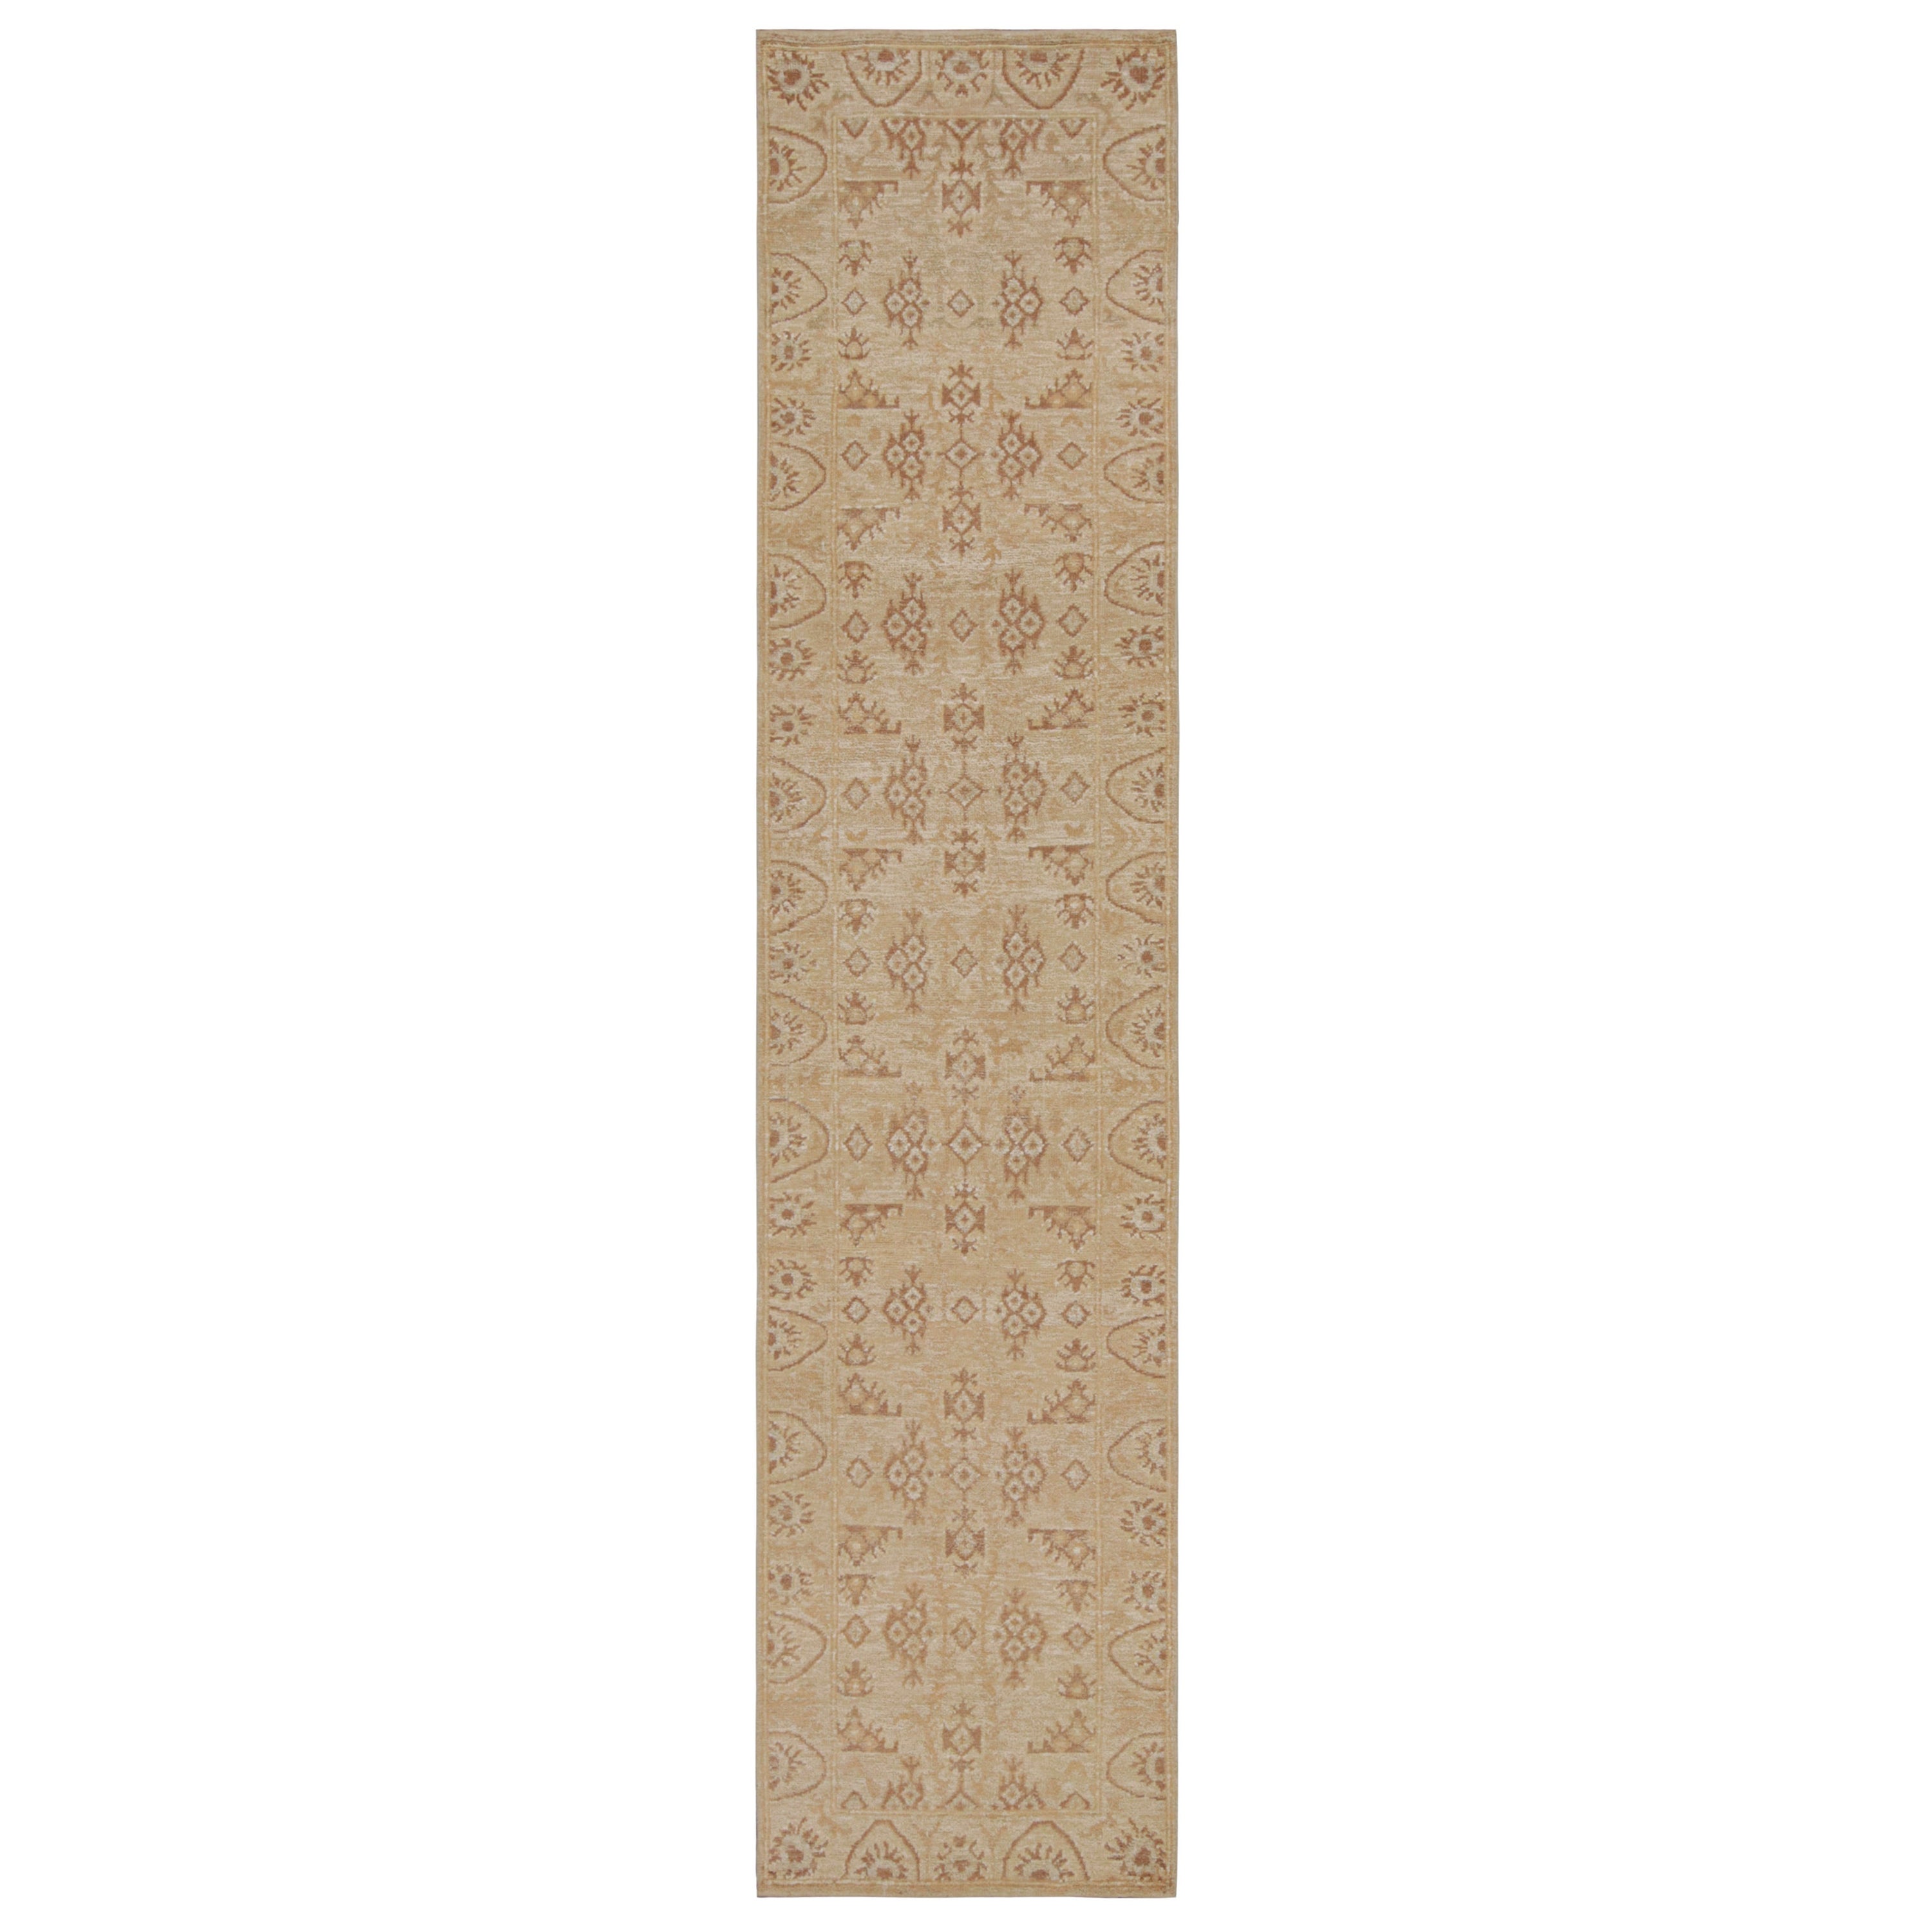 Rug & Kilim's Oushak Style Rug in Beige-Brown Floral Pattern (tapis de style Oushak à motifs floraux beige et marron)